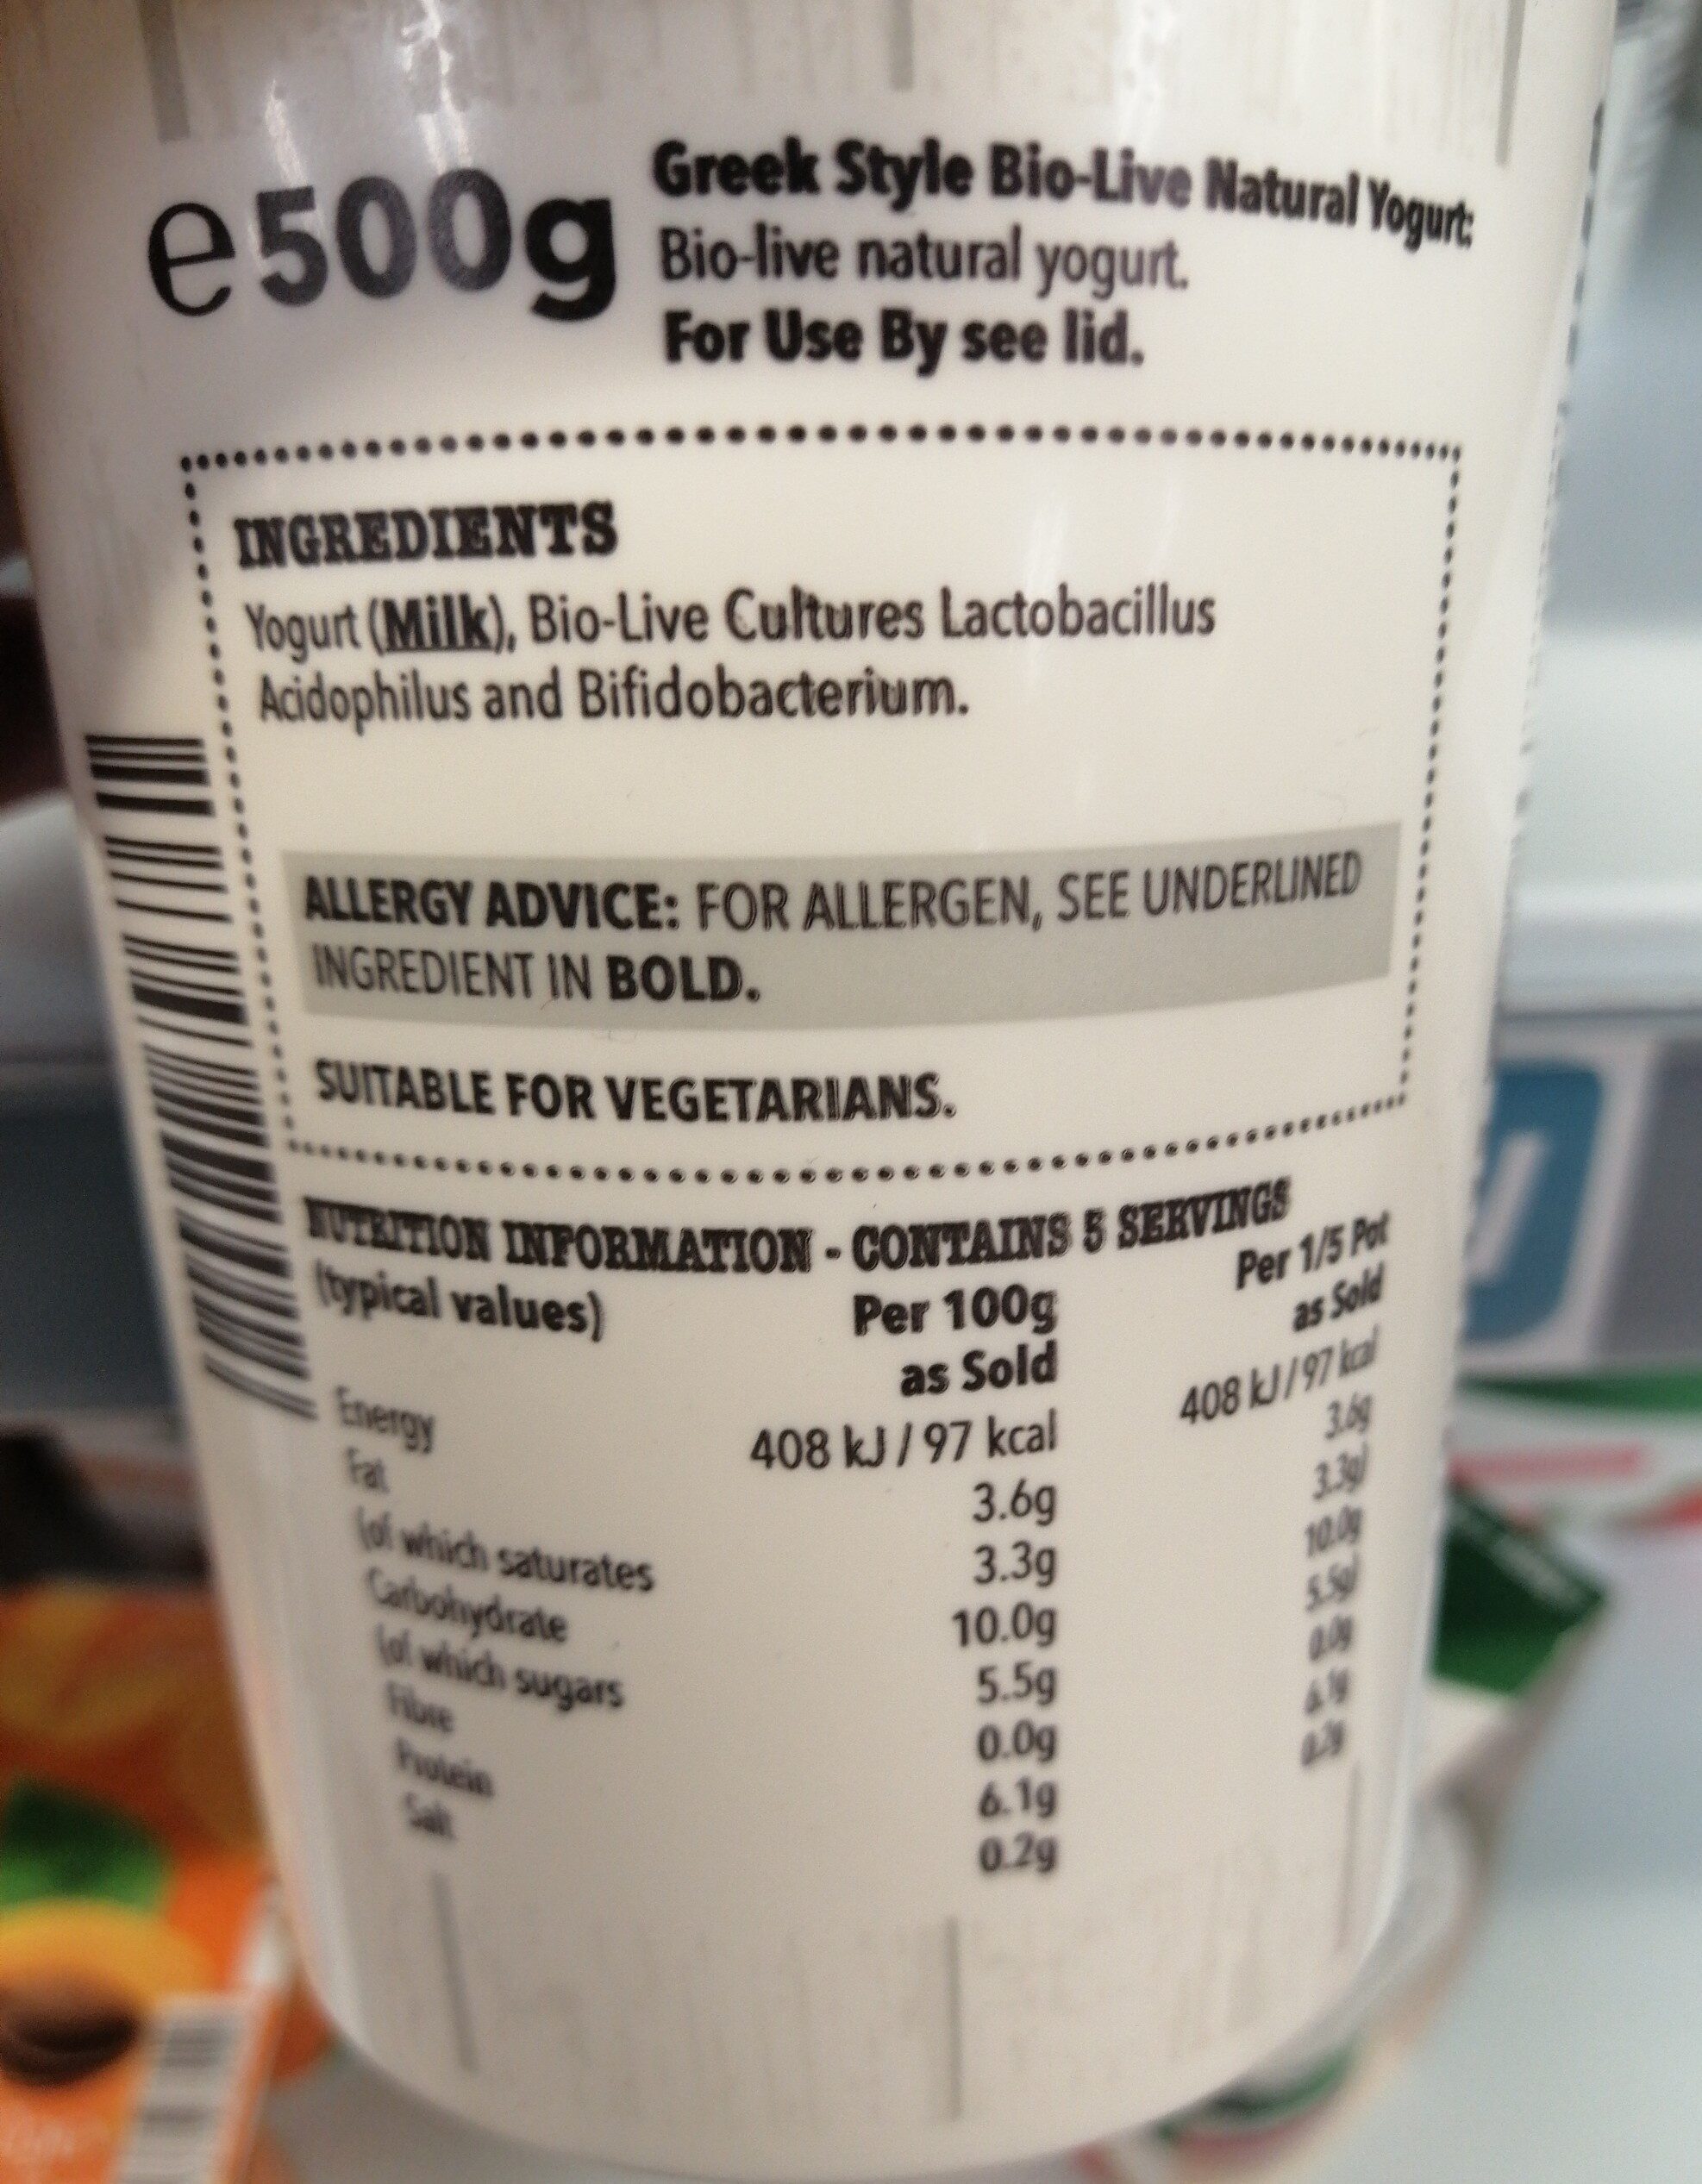 Greek Style Natural Yogurt - Ingredients